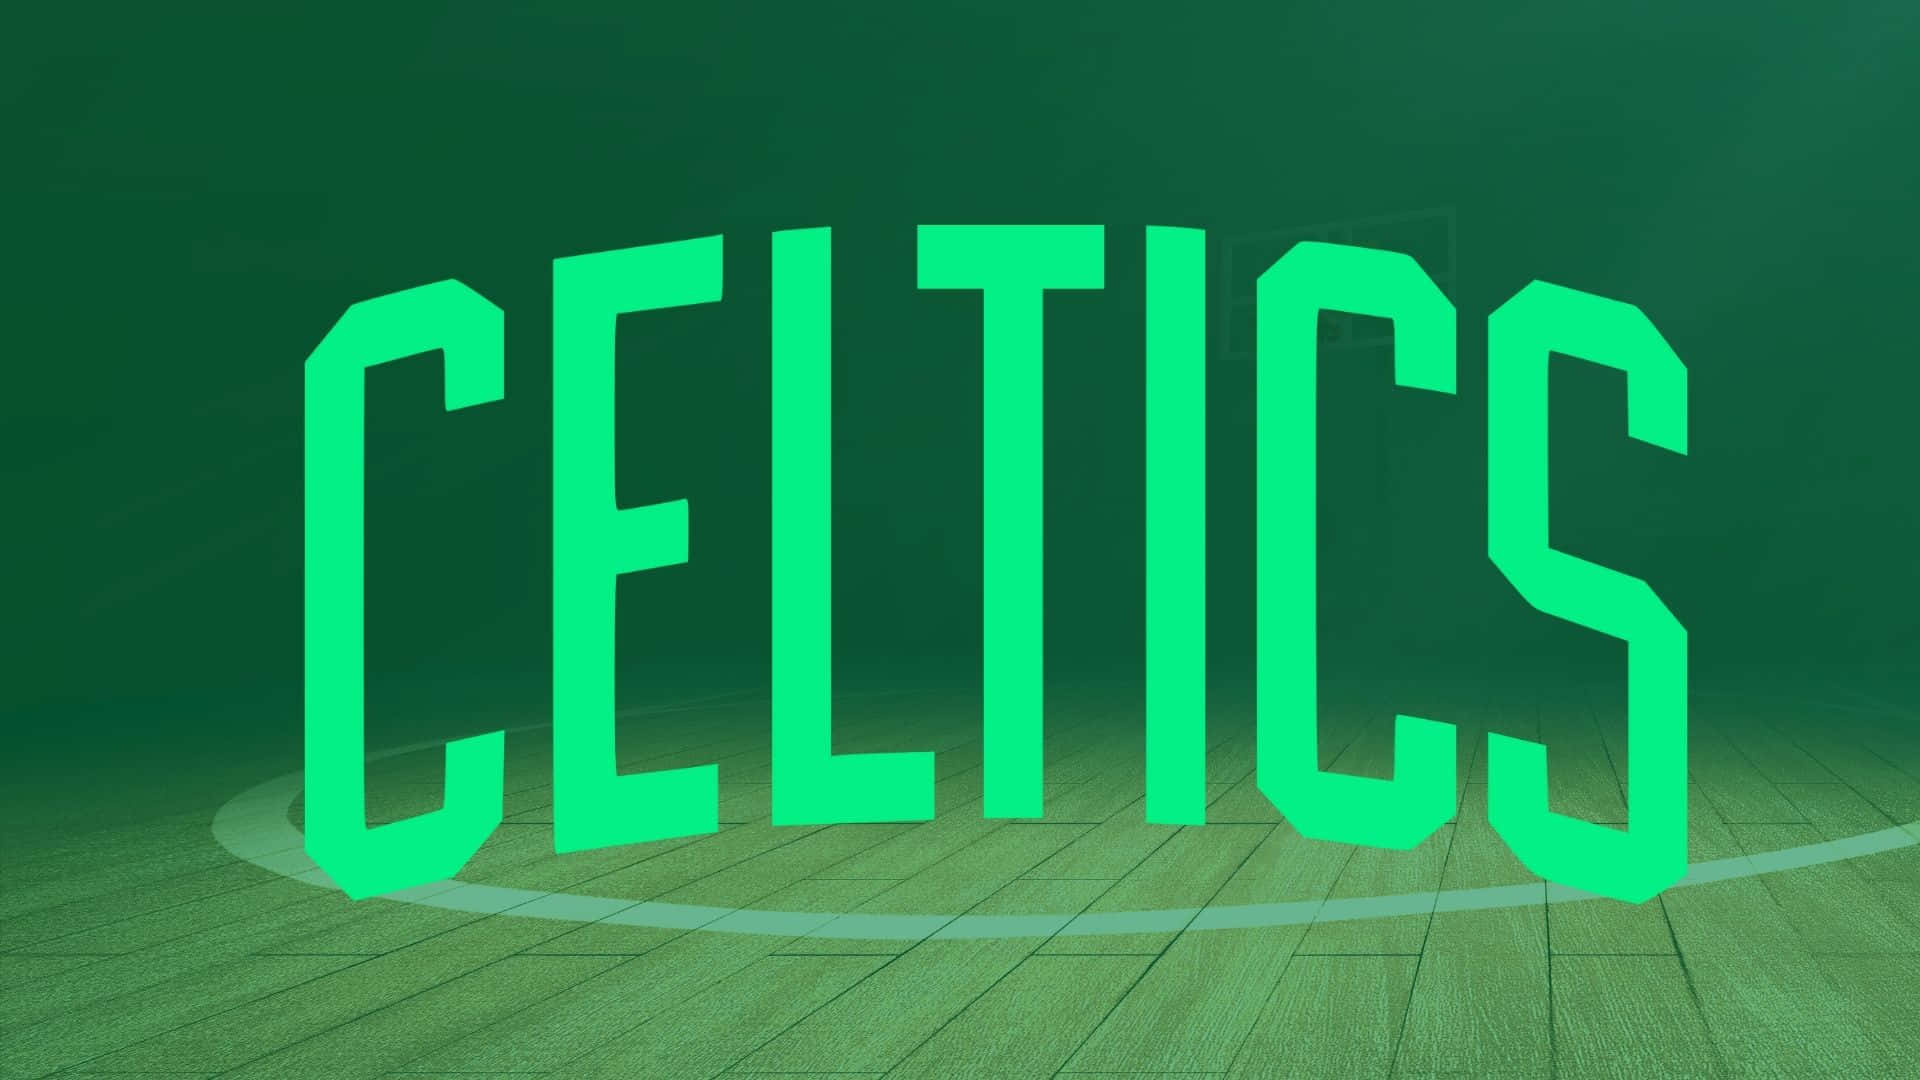 Stigtil Tops Med Boston Celtics. Wallpaper